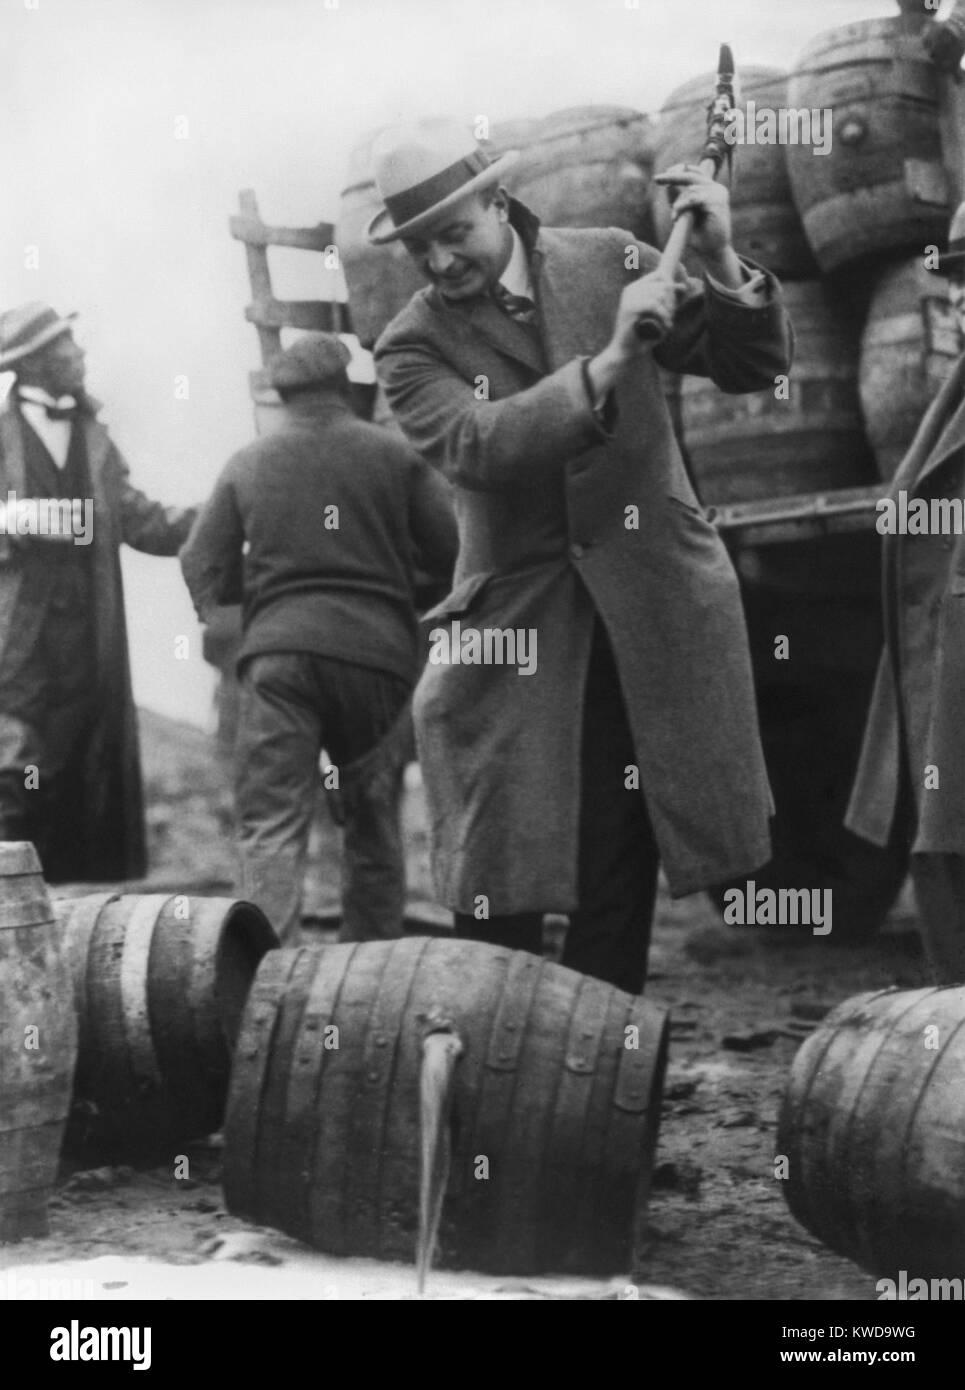 Bier fließt in den Schuylkill River in Philadelphia, als bierfässern durch eine Axt, 1924 zerstört werden. Schwingende das Verbot ax ist die öffentliche Sicherheit Direktor, ehemaliger WW1 Marine Allgemeine, Smedley D. 'uckboards' Butler (BSLOC 2016 10 85) Stockfoto